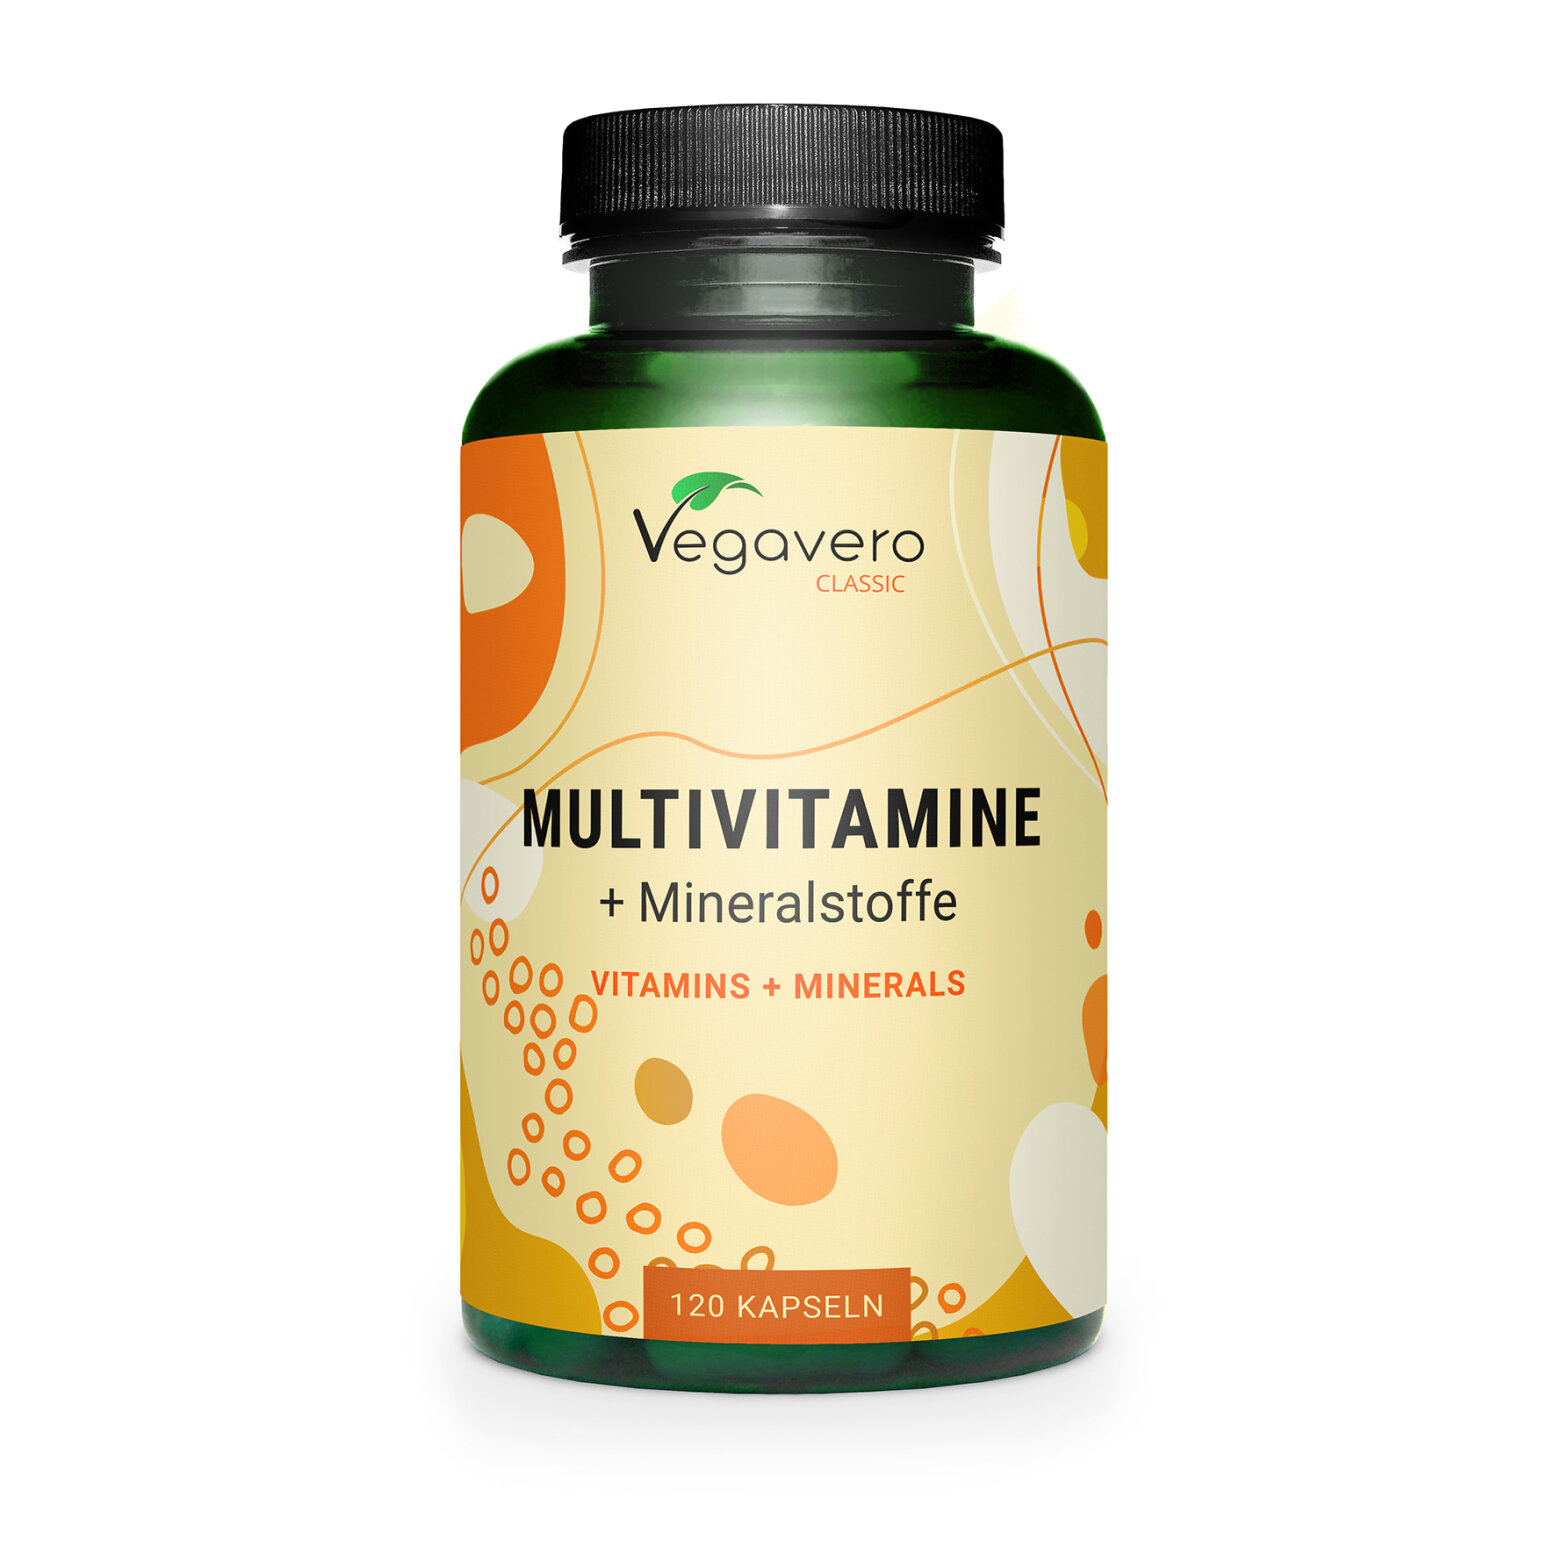 Vegavero Multivitamine + Mineralstoffe | 120 Kapseln